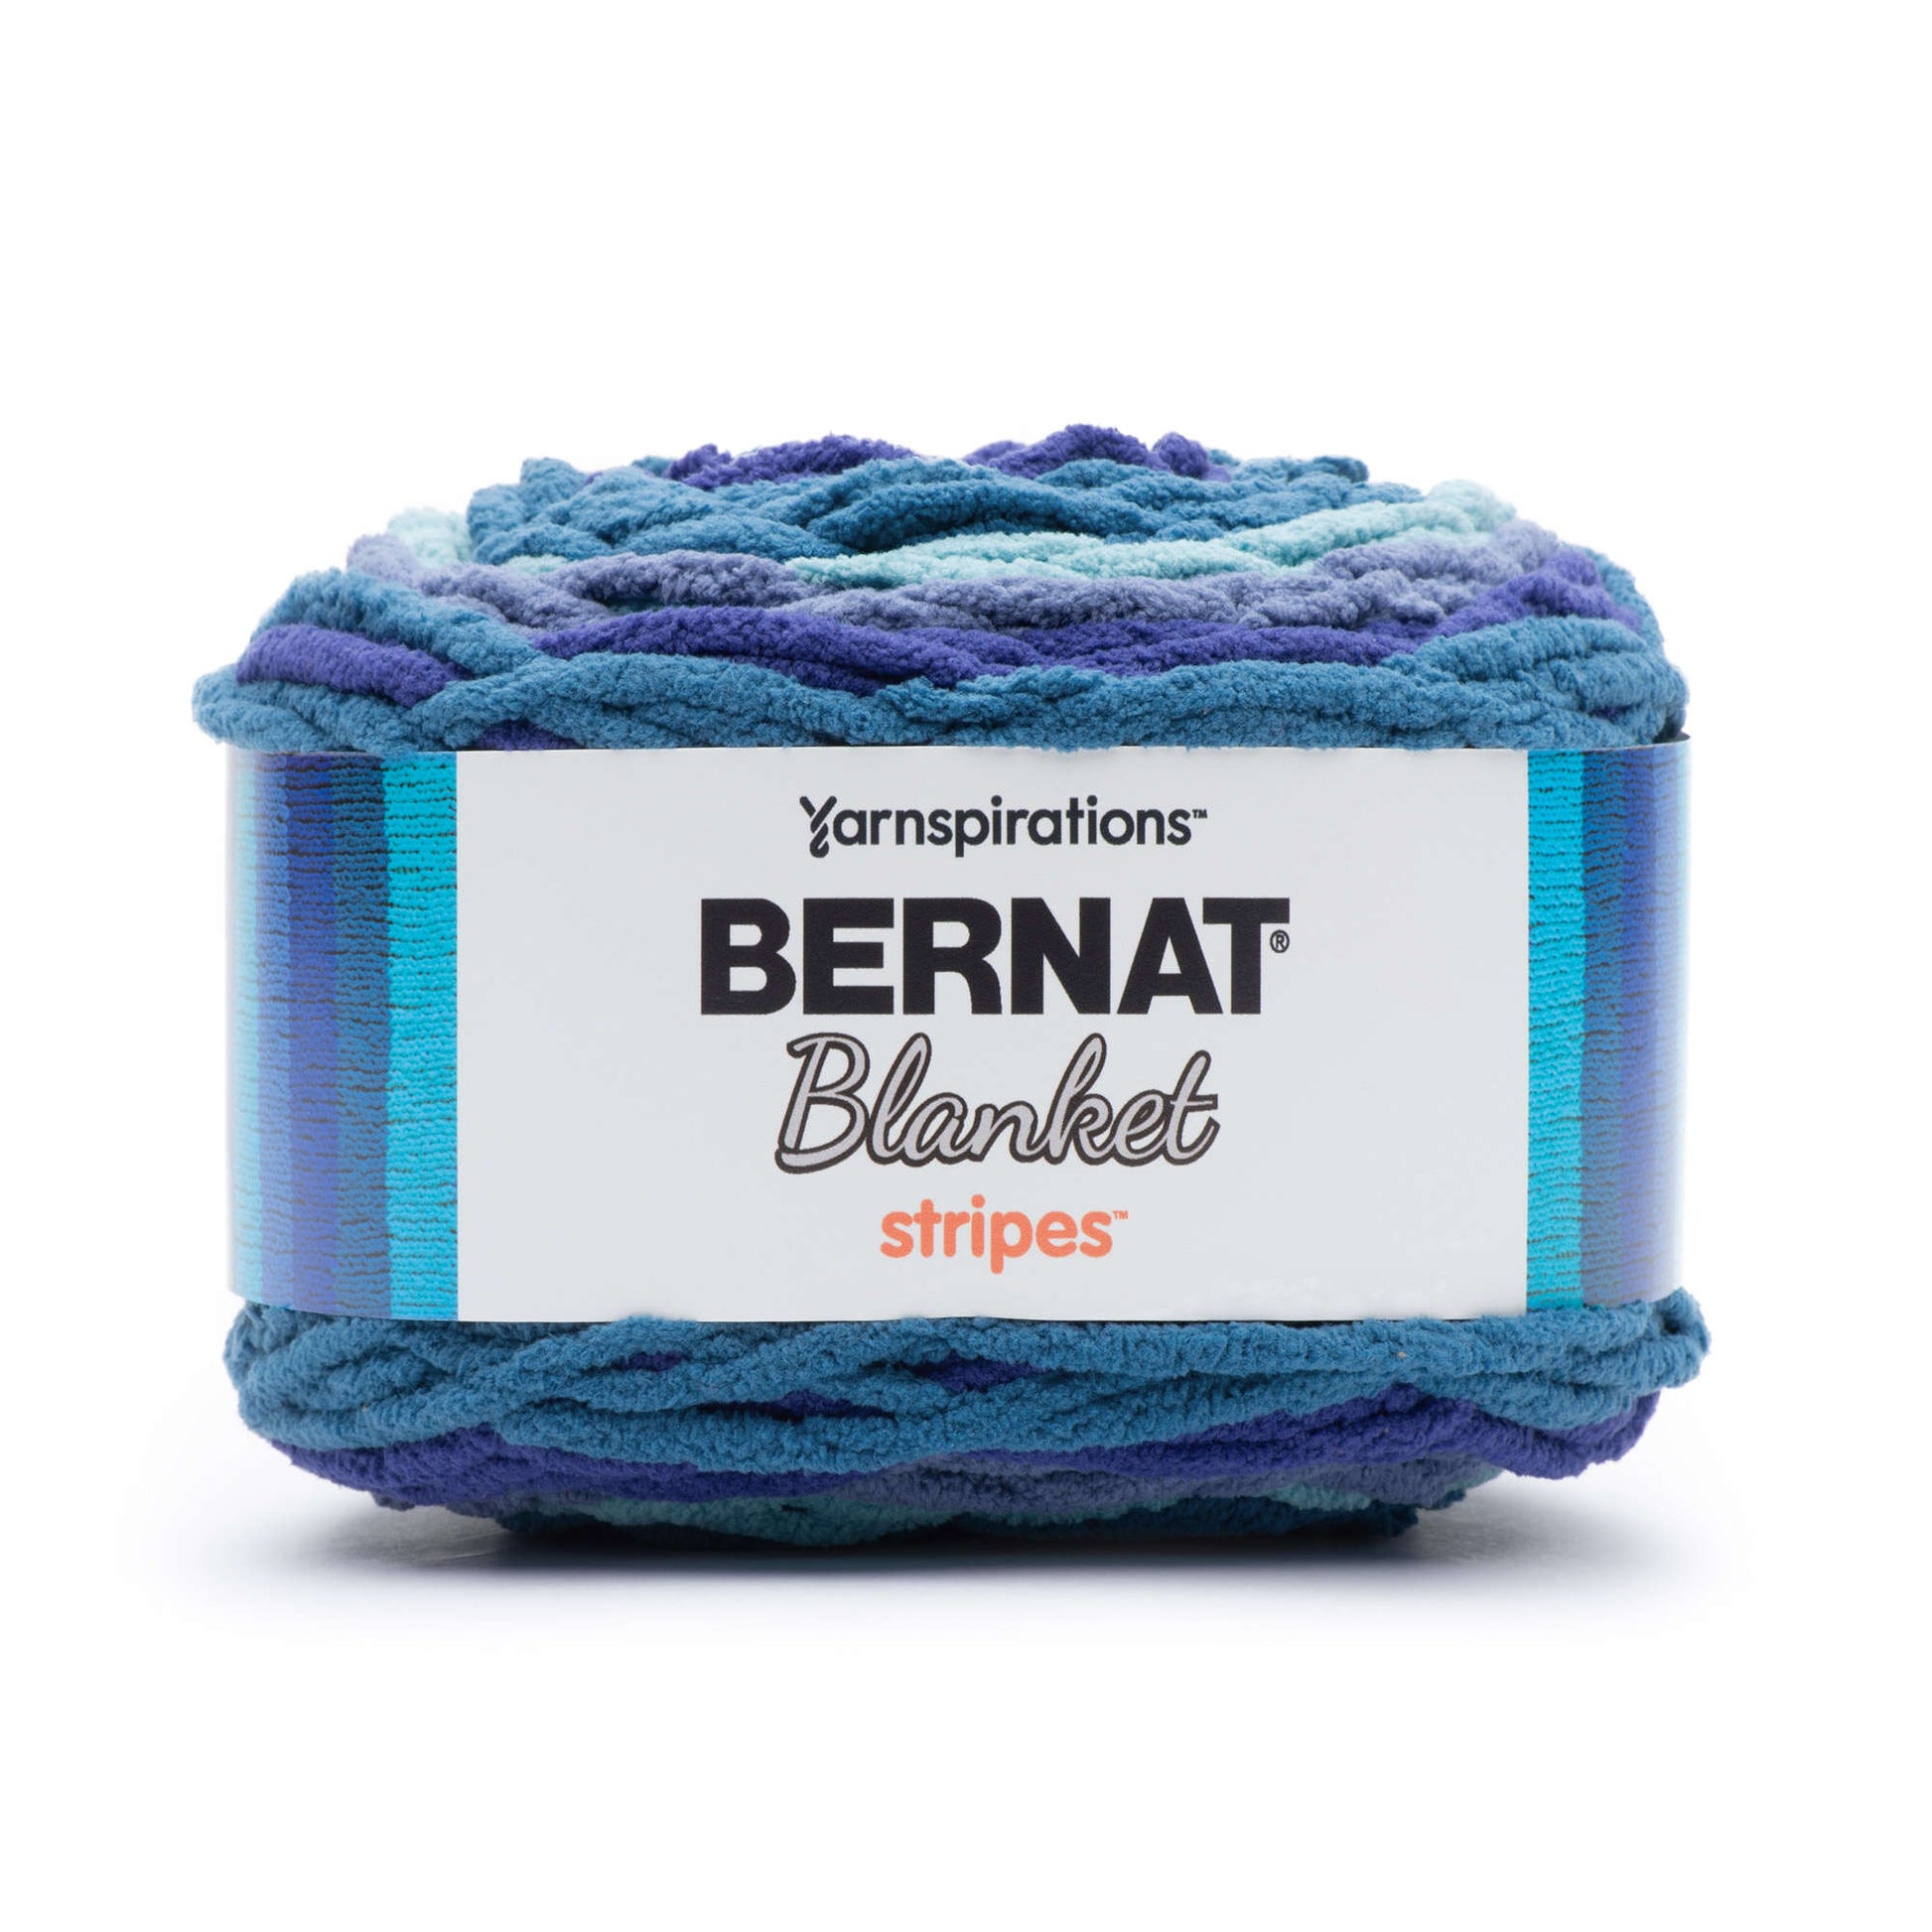 Bernat Blanket Stripes Yarn (300g/10.5oz) - Discontinued Shades Stormy Sky